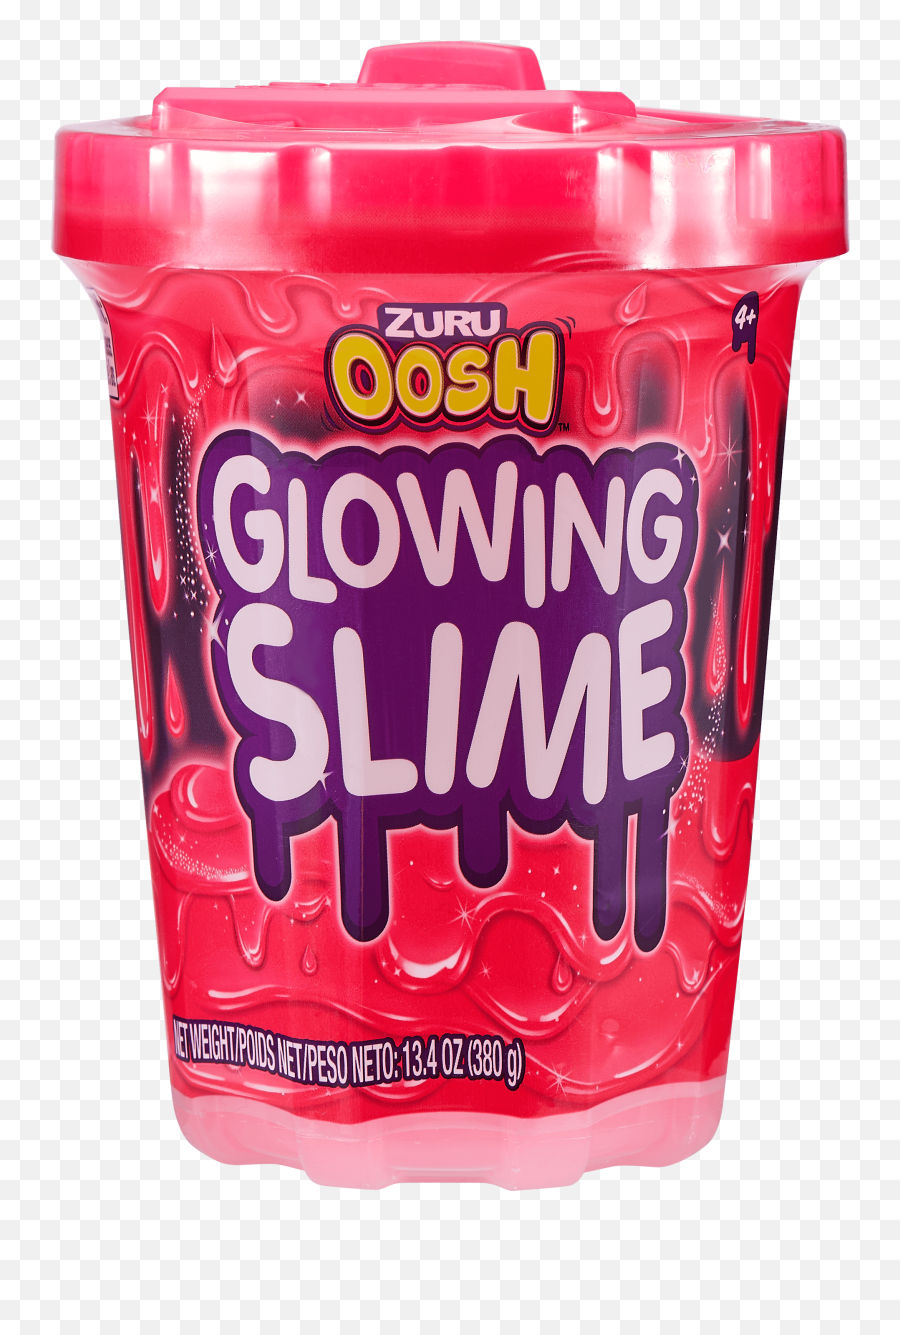 Oosh Glowing Glow In The Dark Slime 3 - Cup Emoji,Glow In The Dark Rings For Fingers Emojis From Walmart